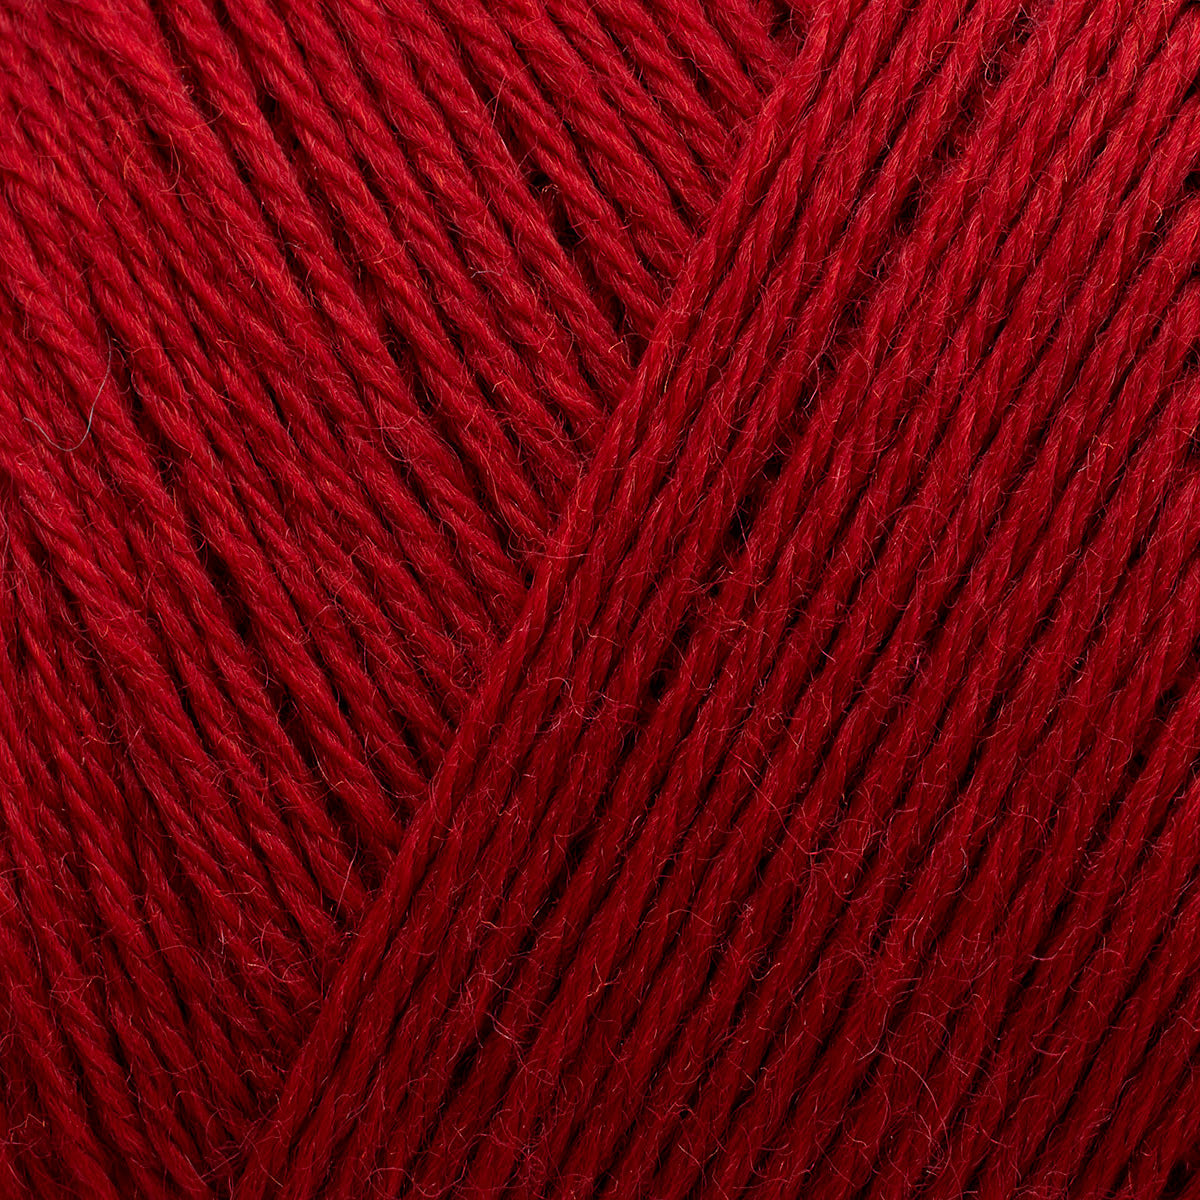 Arwetta deep red [139]